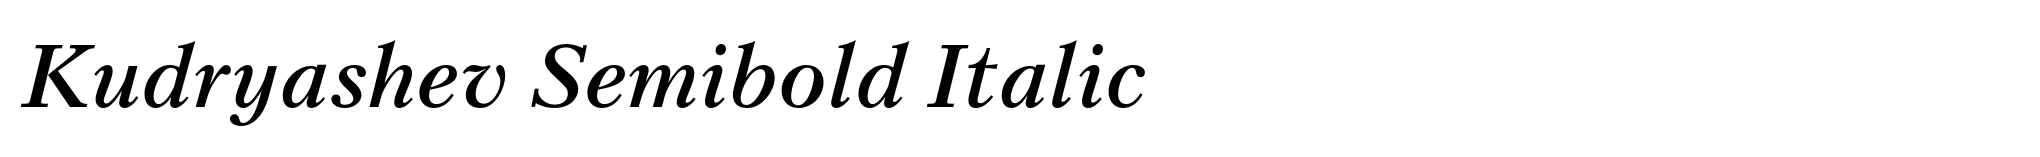 Kudryashev Semibold Italic image